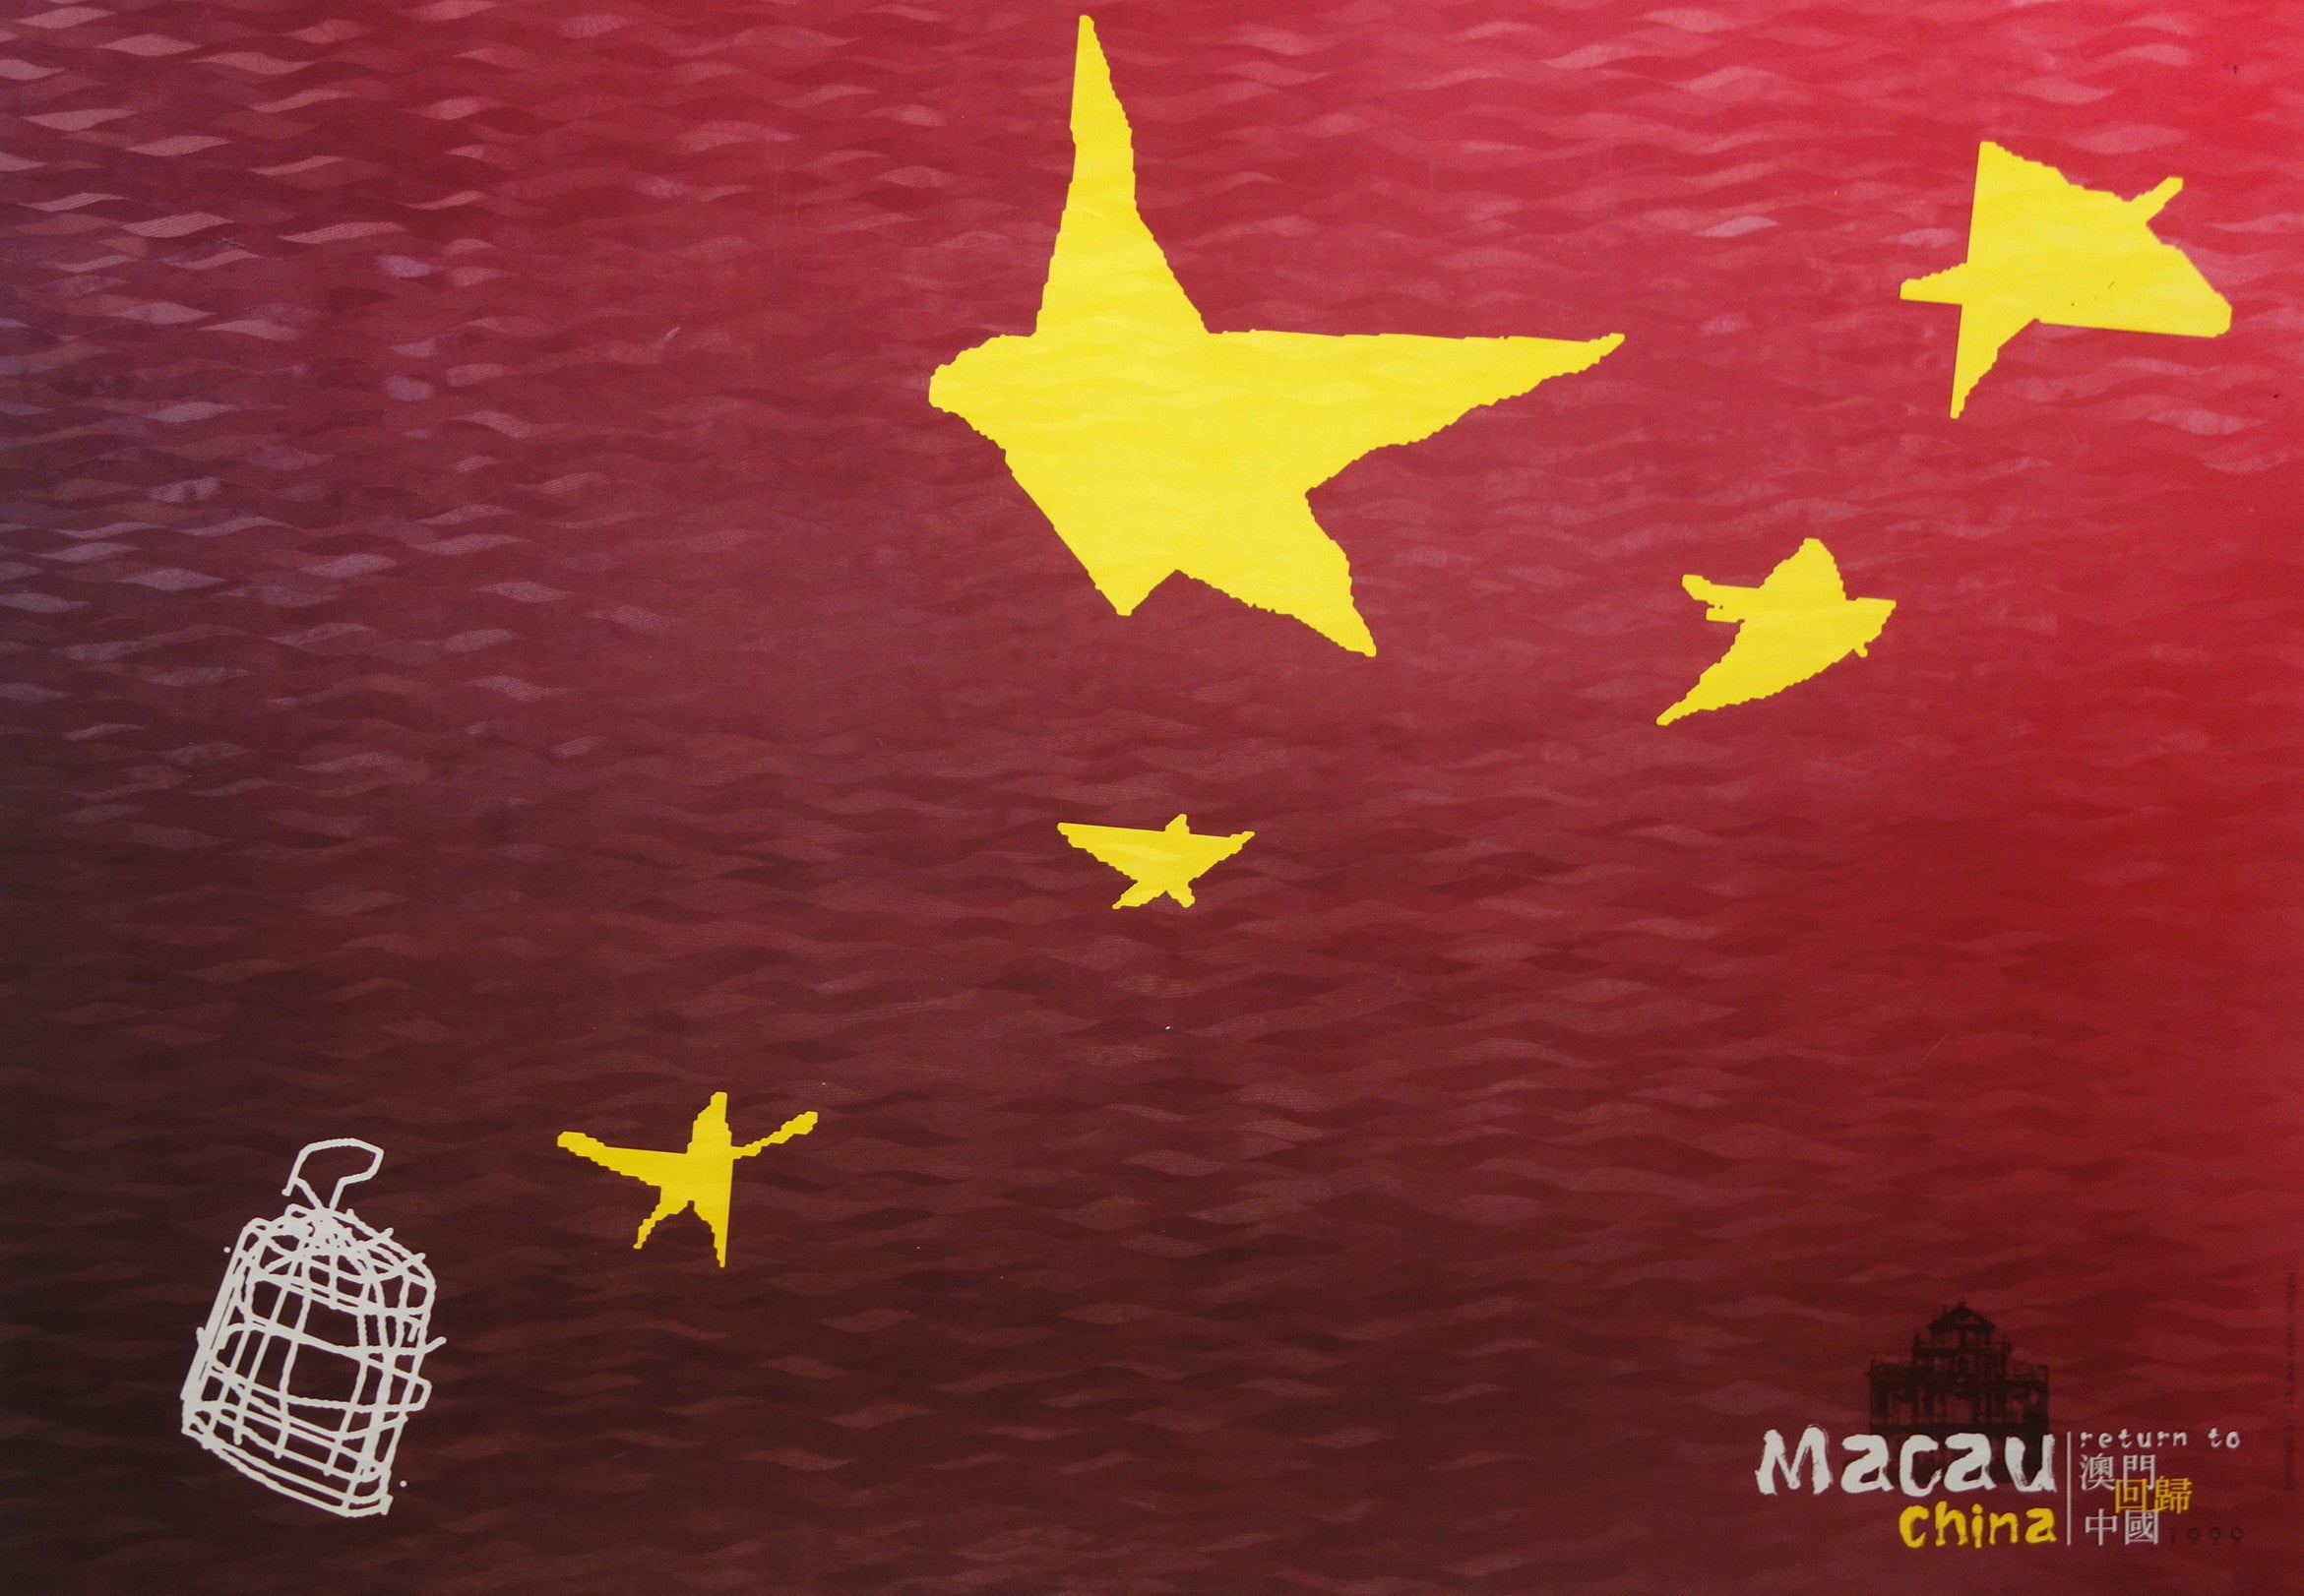 Macau Return To China